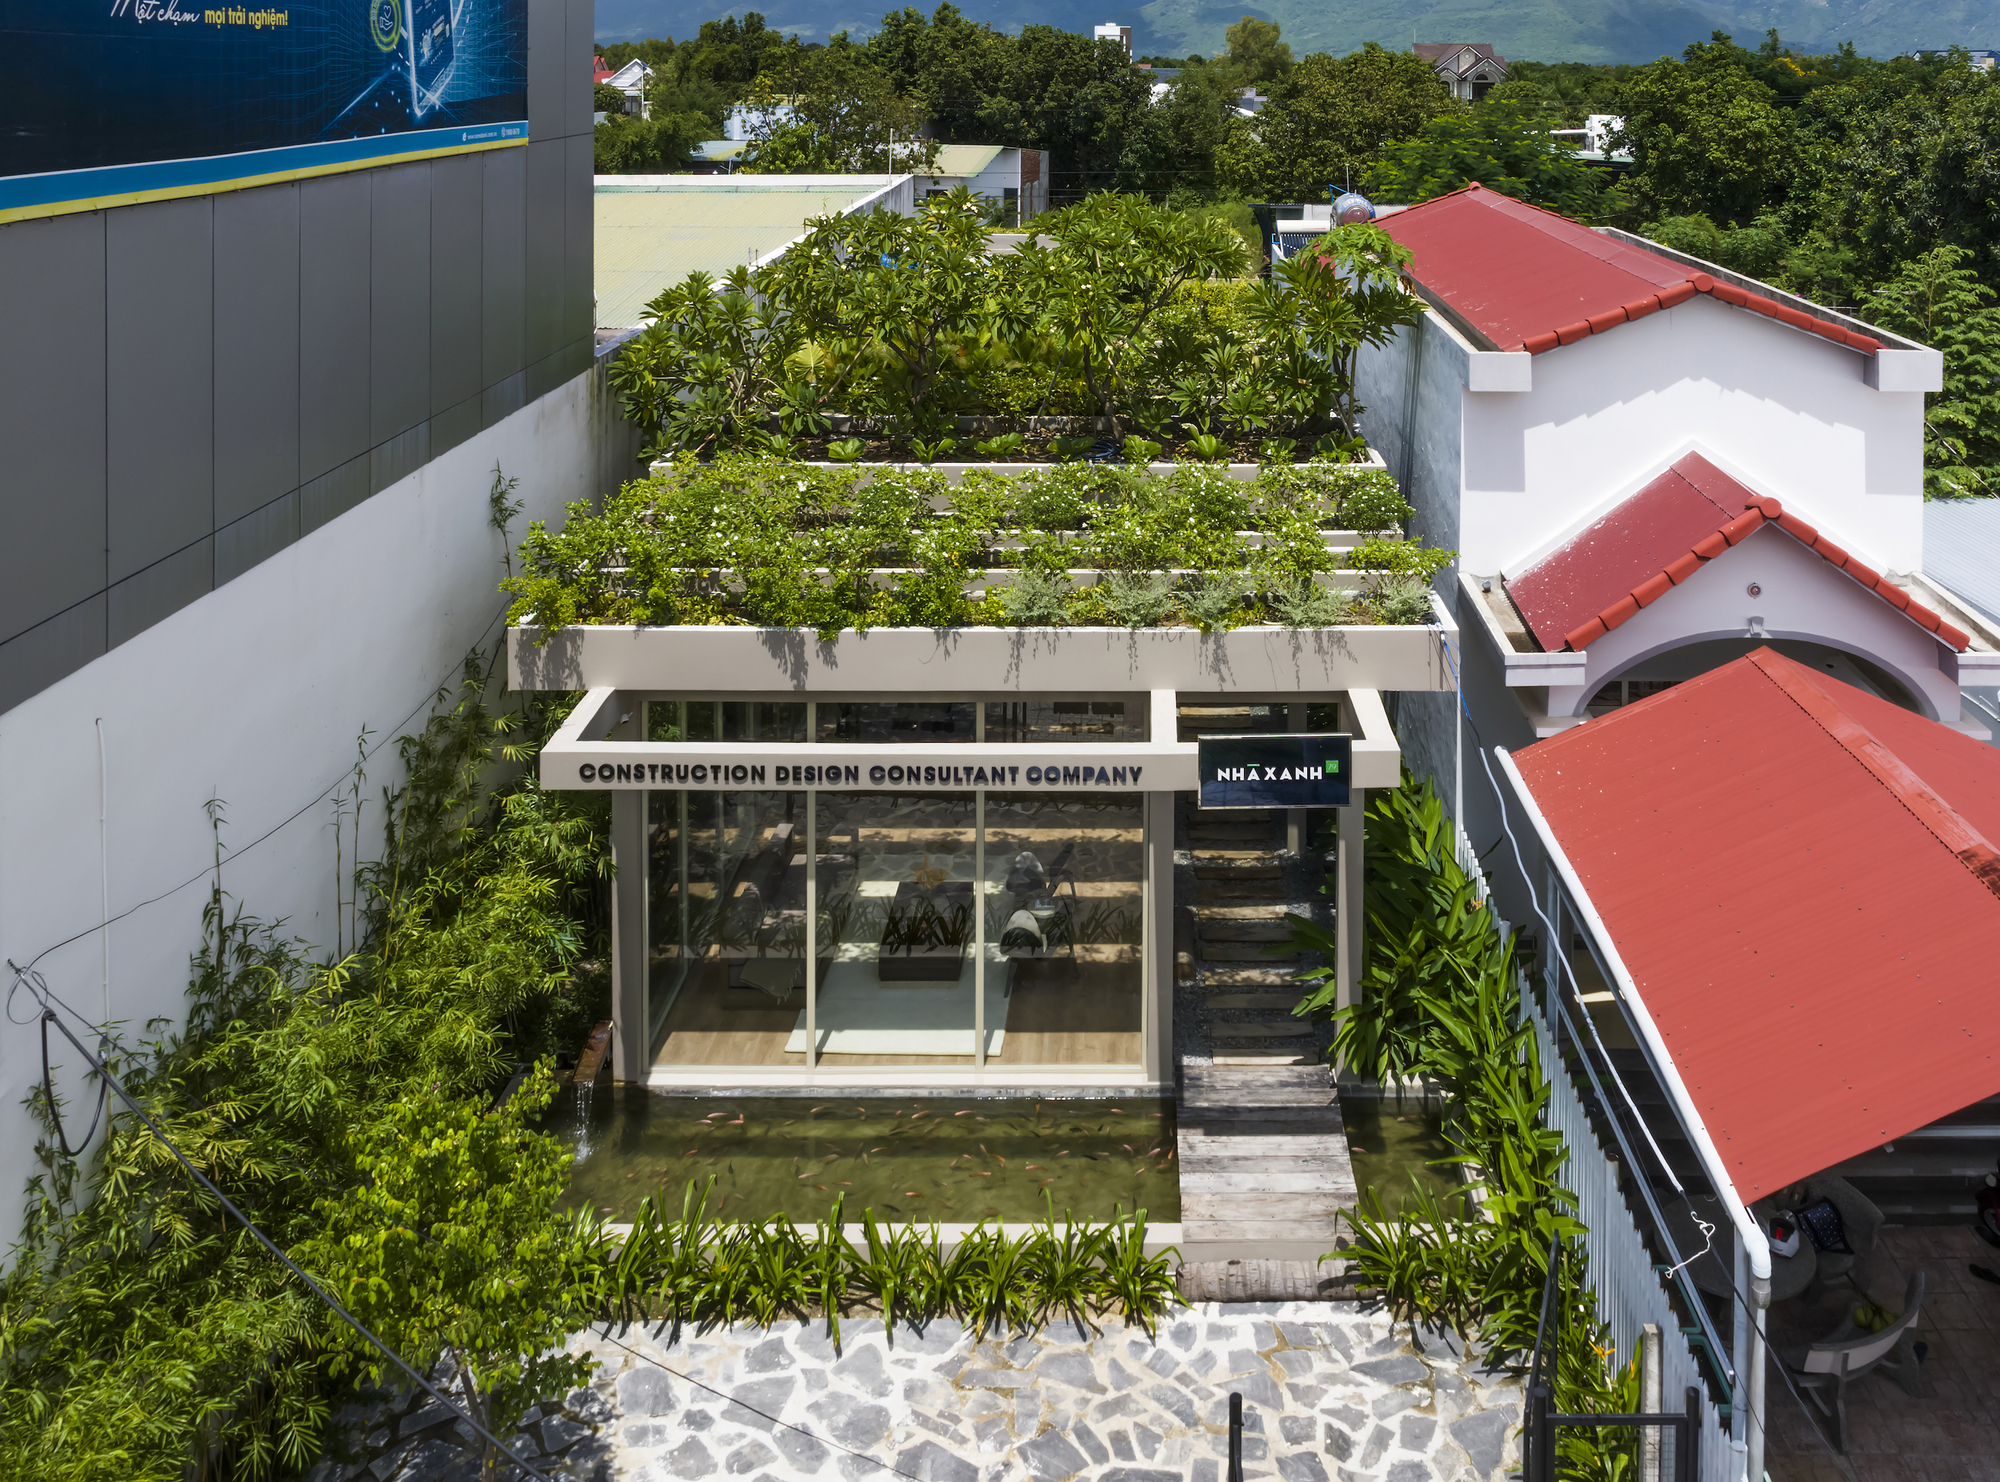 Офис для деревьев / Pham Huu Son Architects